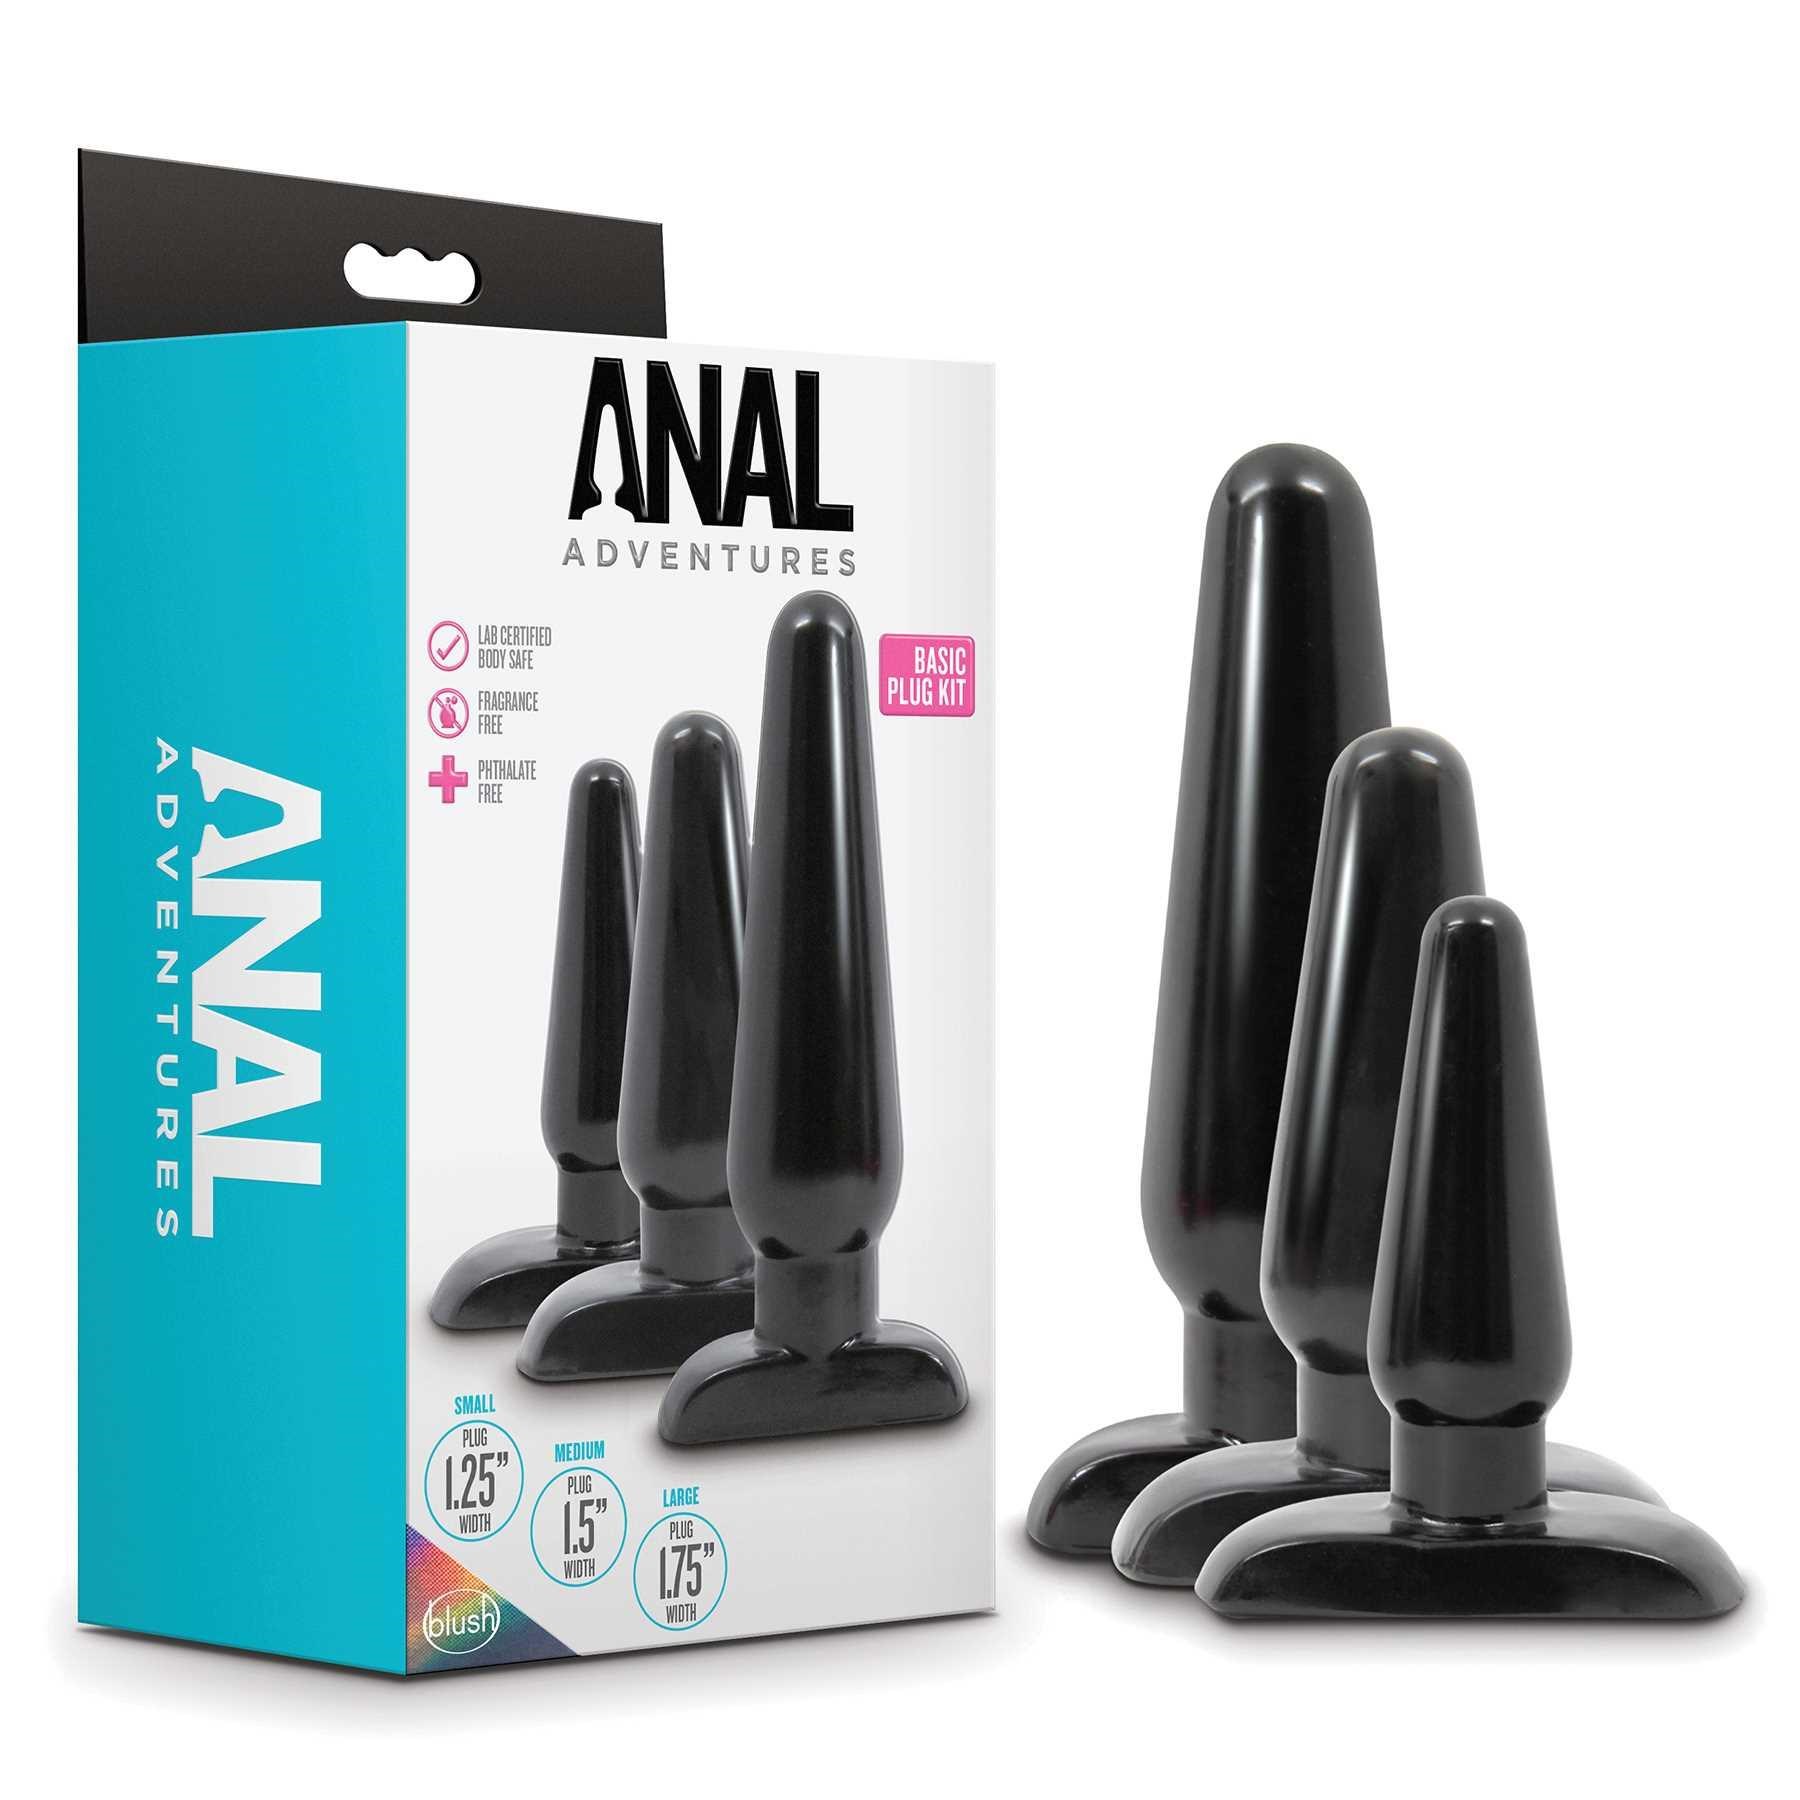 anal adventures basic plug kit box packaging